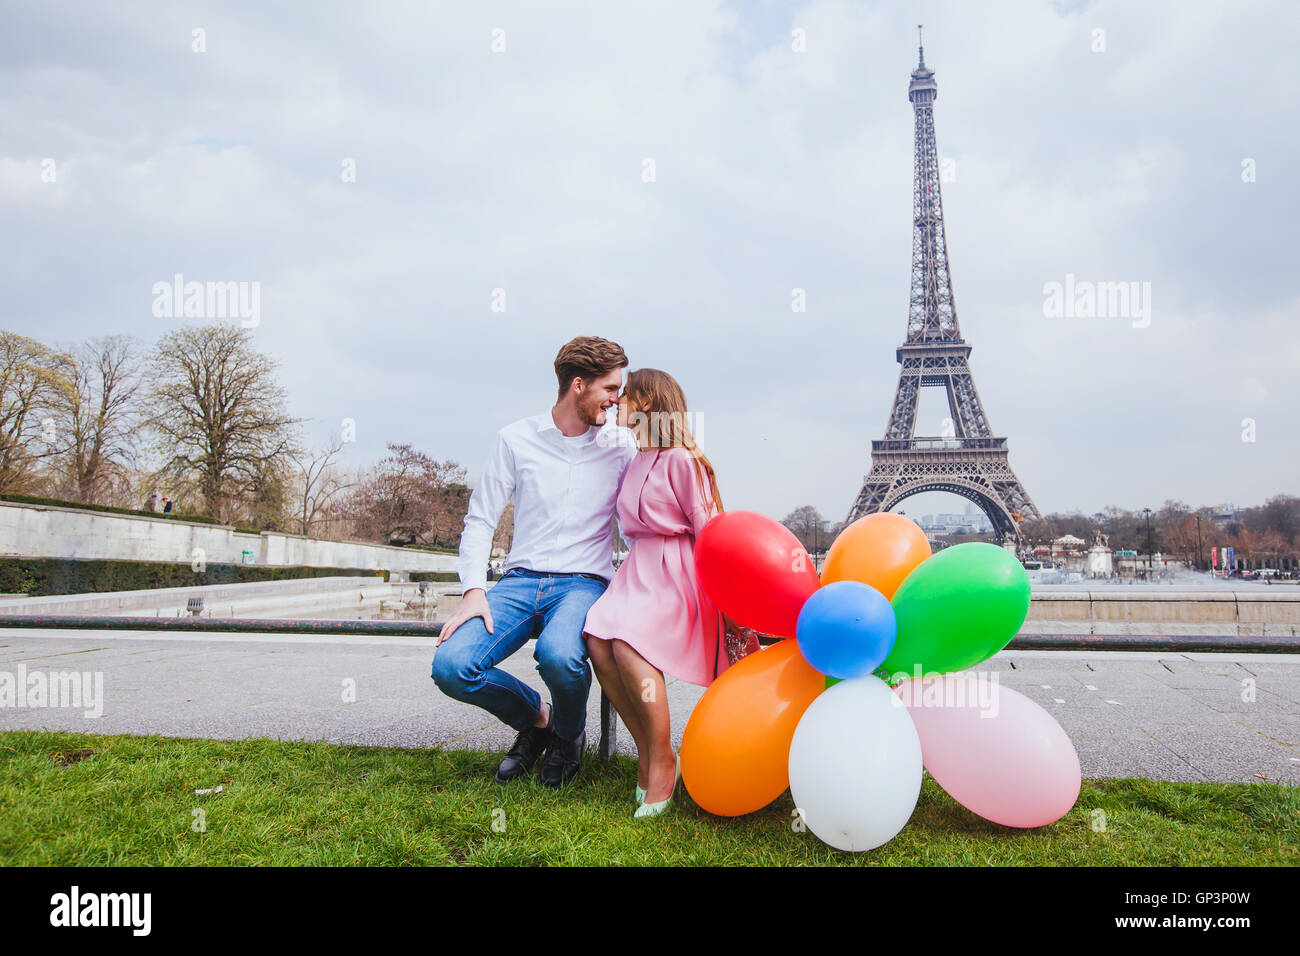 Fotoshooting Gluckliches Paar Mit Luftballons Posiert In Der Nahe Von Eiffelturm In Paris Stockfotografie Alamy